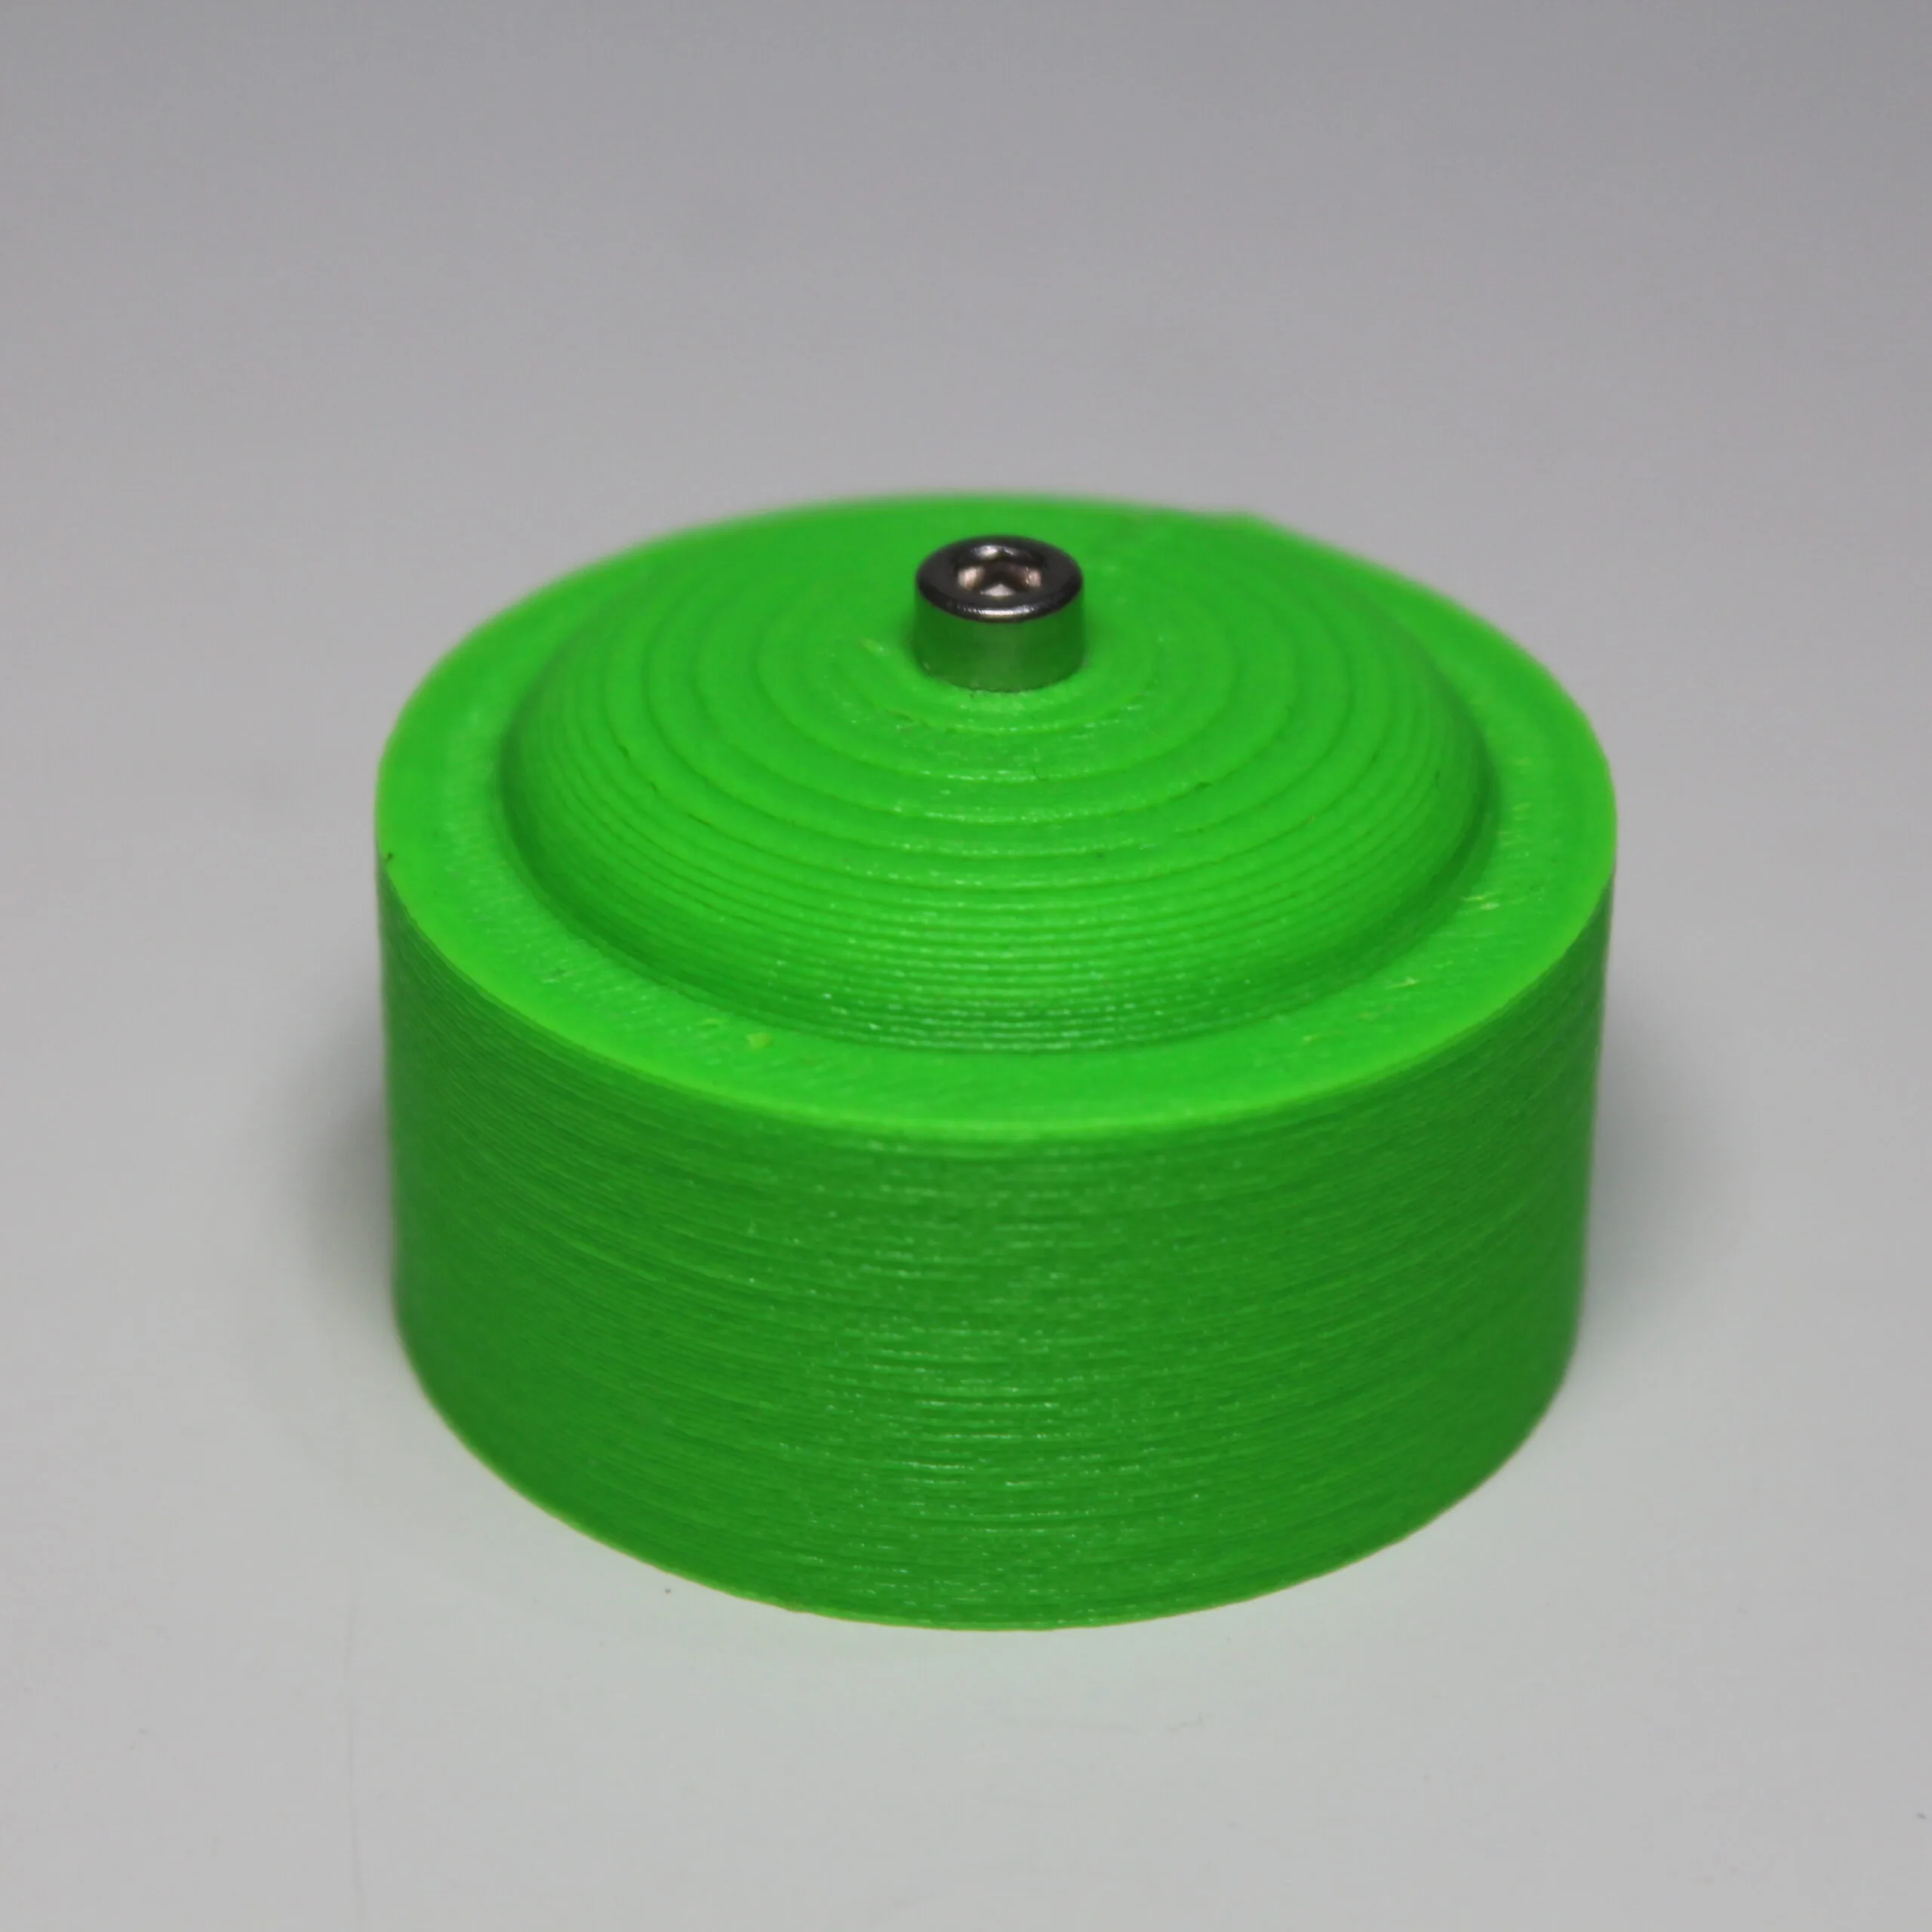 Оснастка для формовки стальных крышек, изготовленная на 3D-принтере